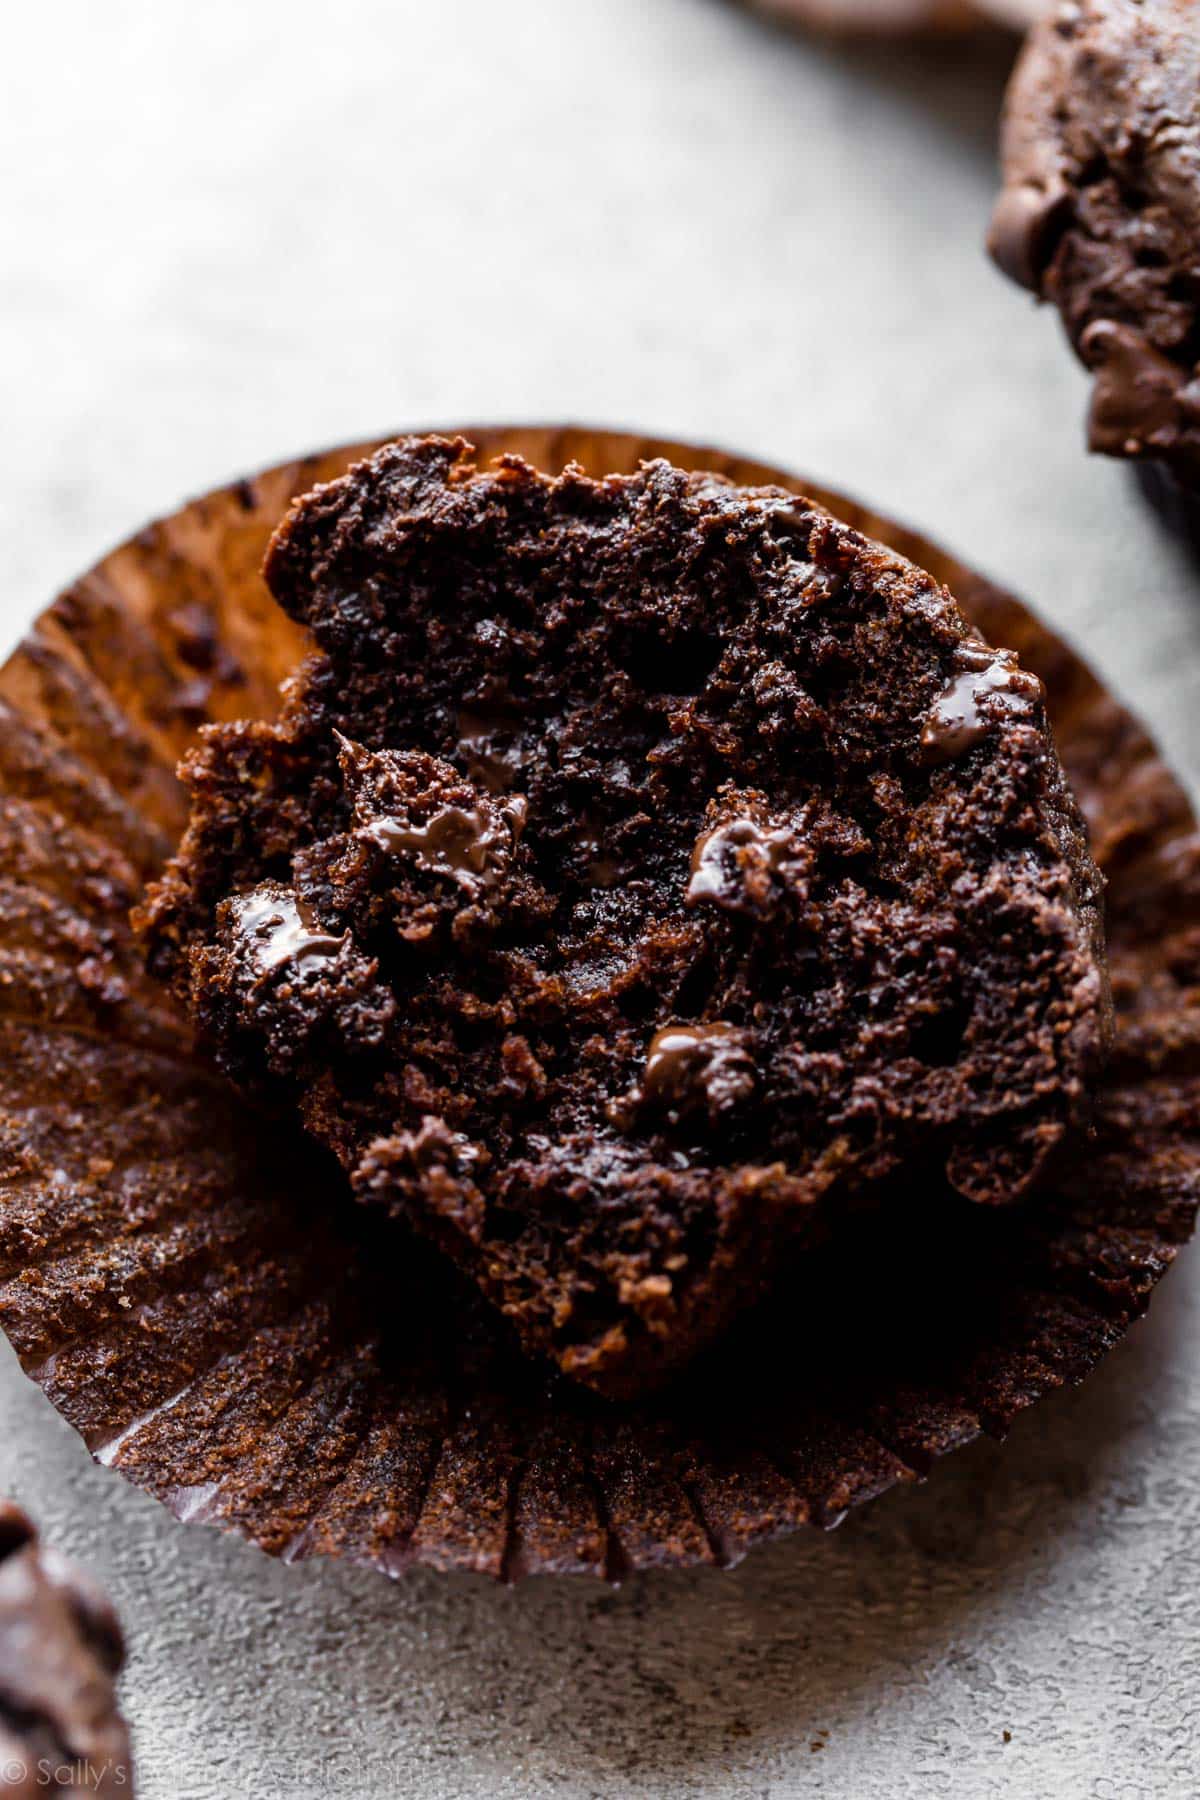 chocolate muffin cut in half